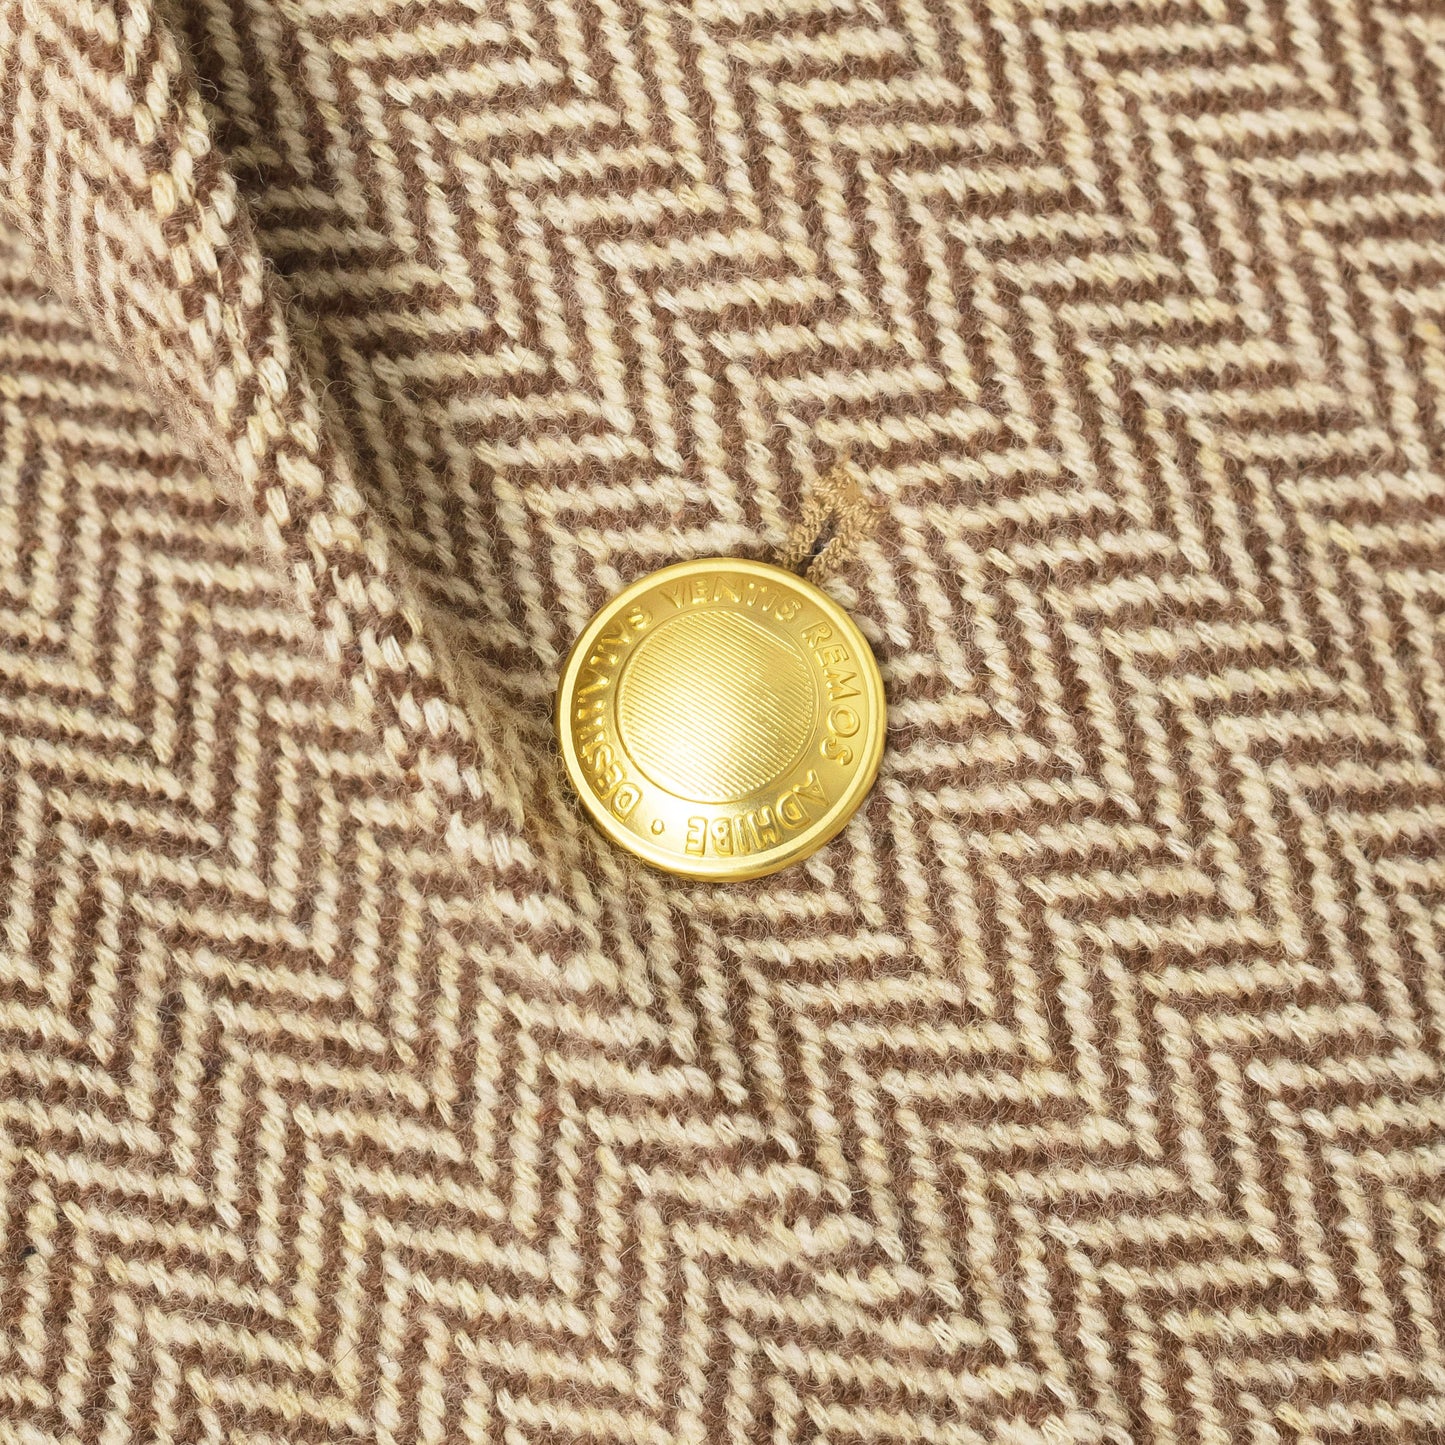 100% Wool Jacket (Brown Herringbone Jacket)